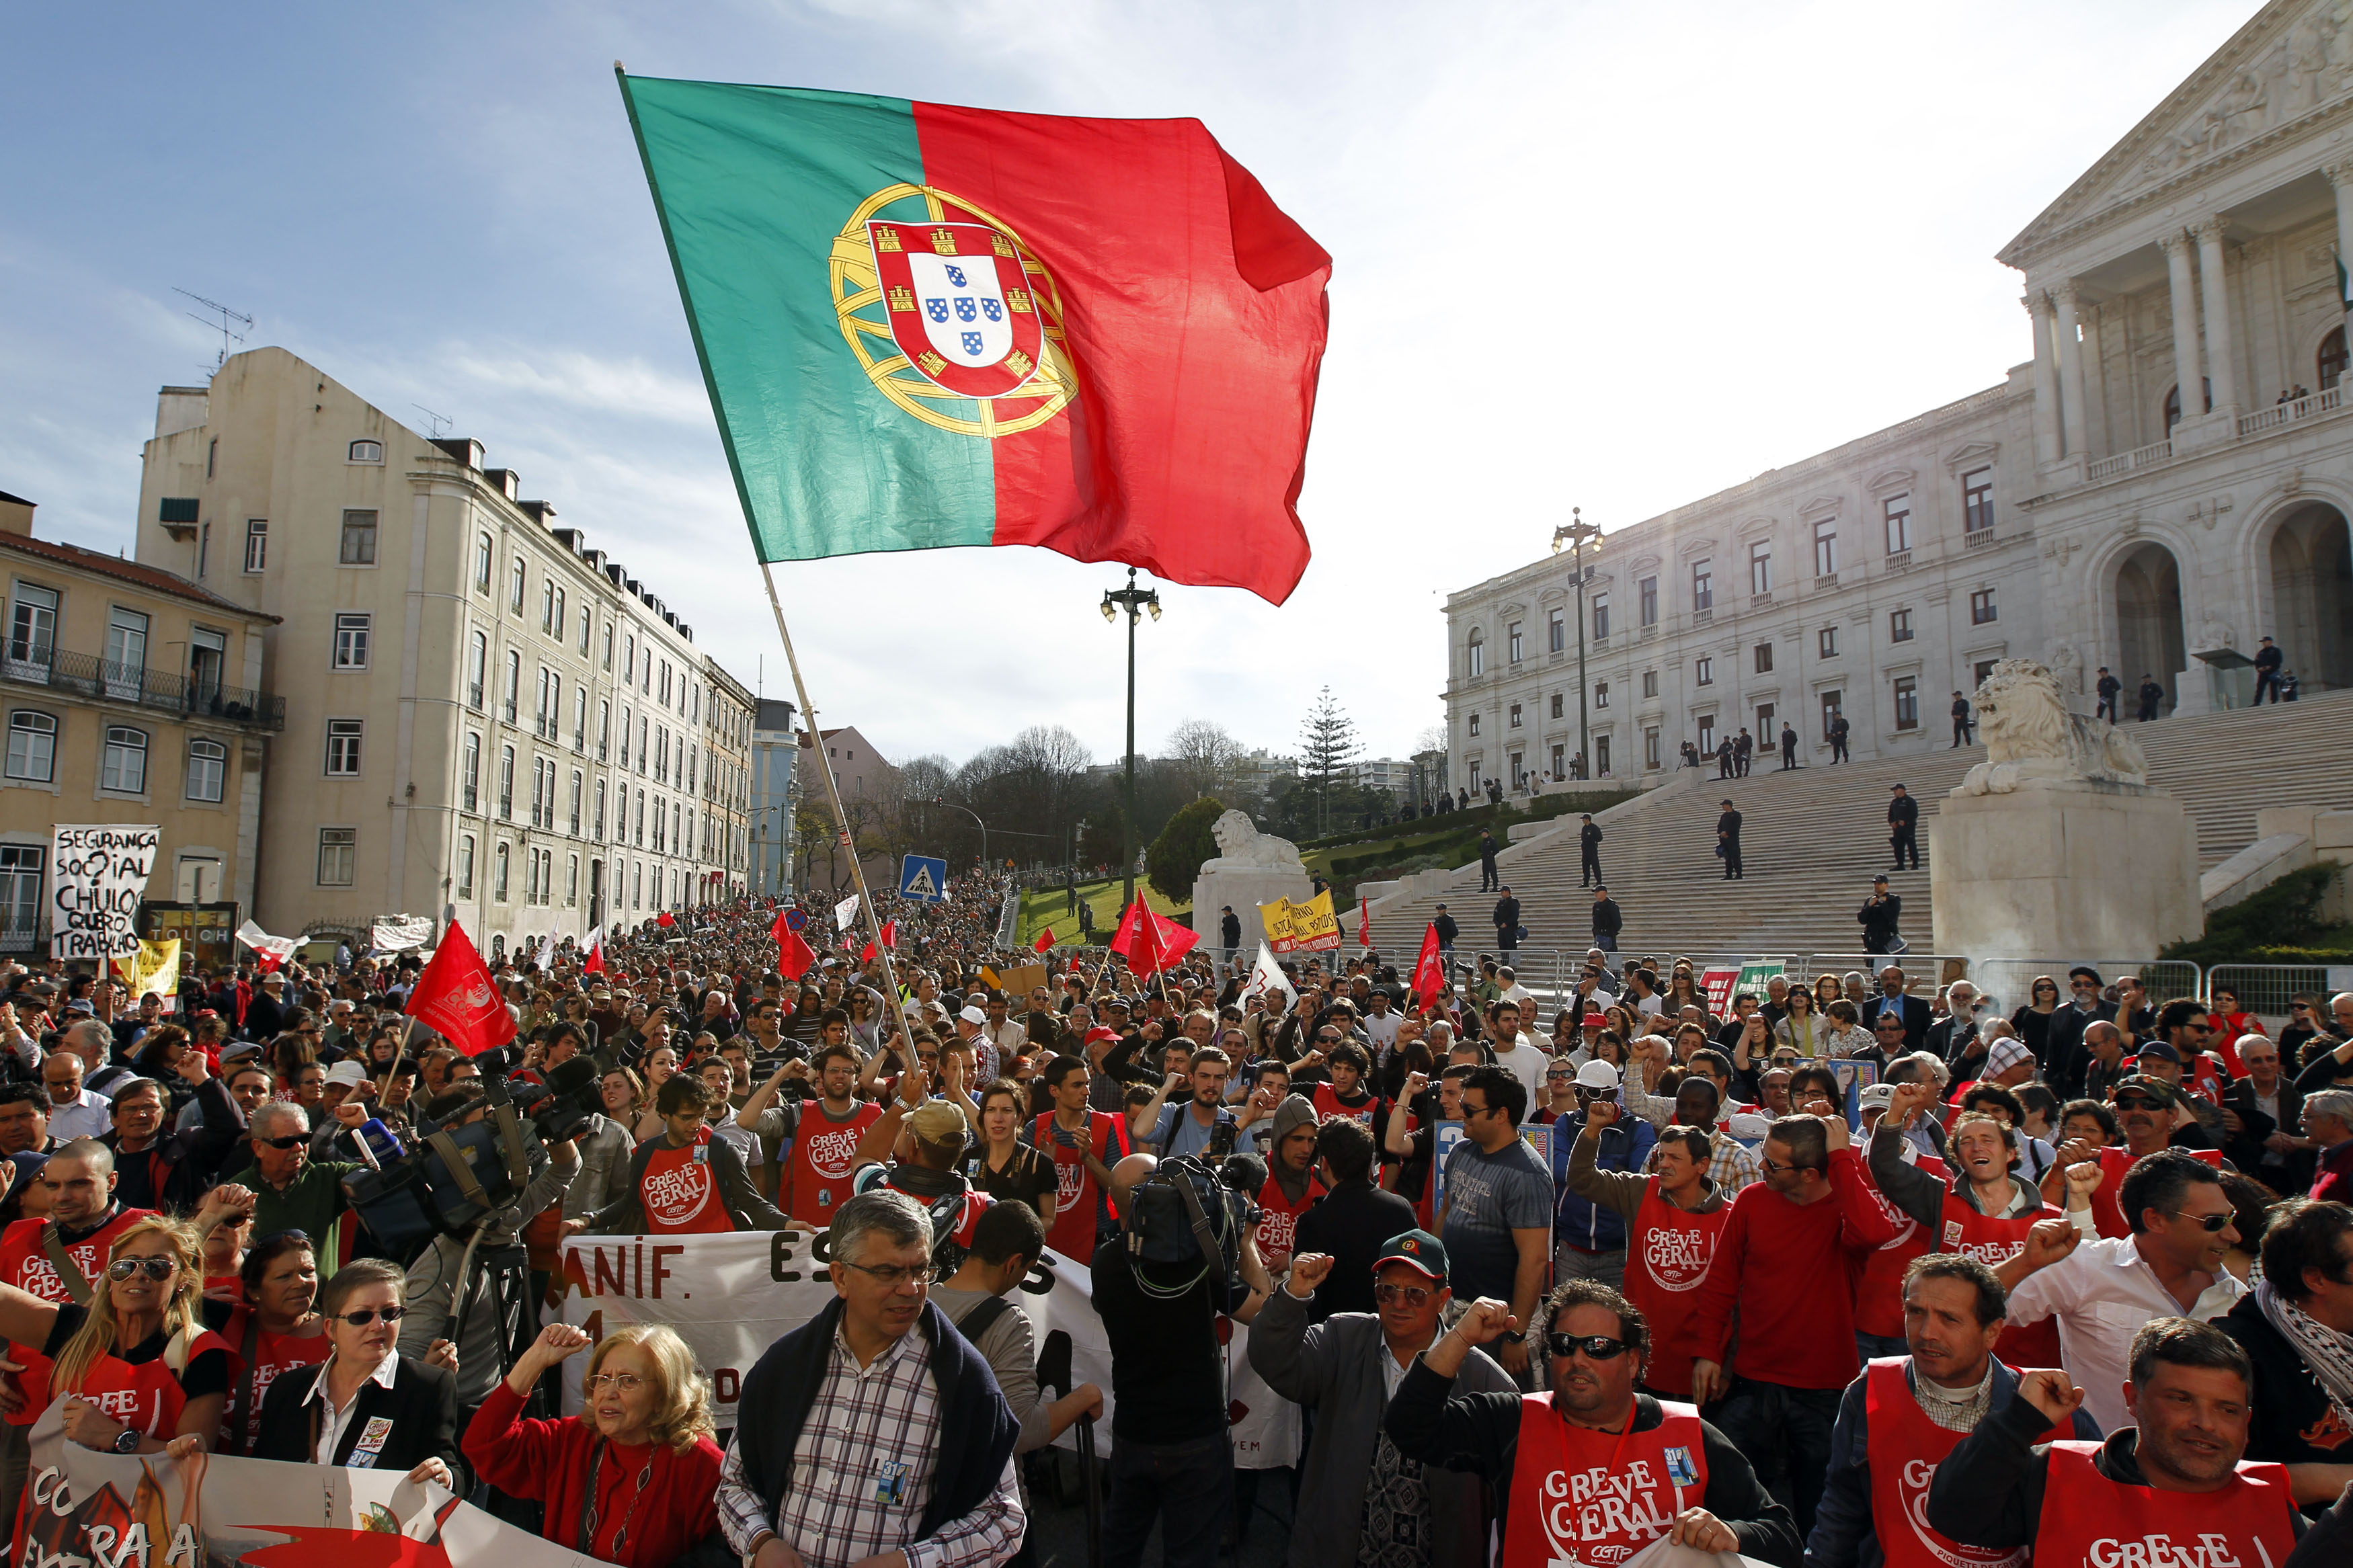 10 июня 21. День независимости Португалии. Революция в Португалии 1974. Революция гвоздик в Португалии. Португалия праздники.